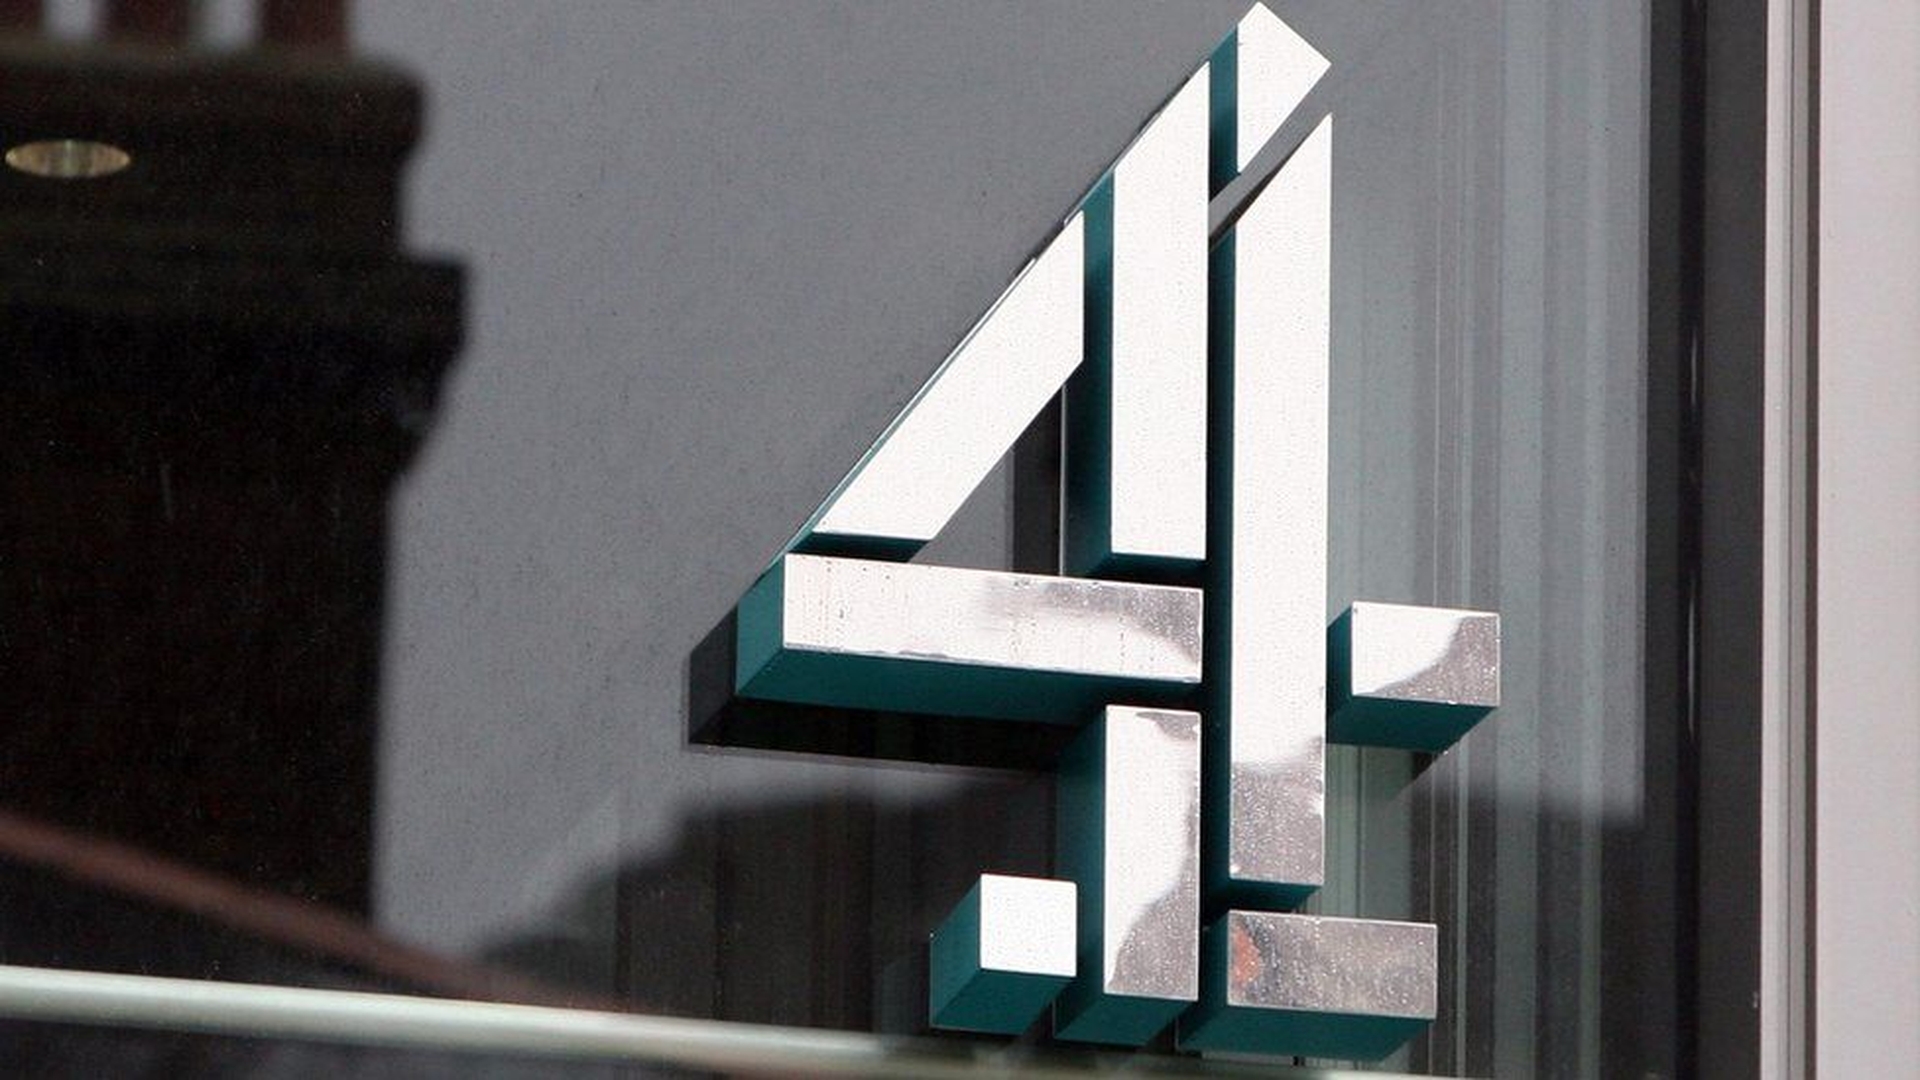 Channel 4 del Regno Unito rilascerà spettacoli su Youtube